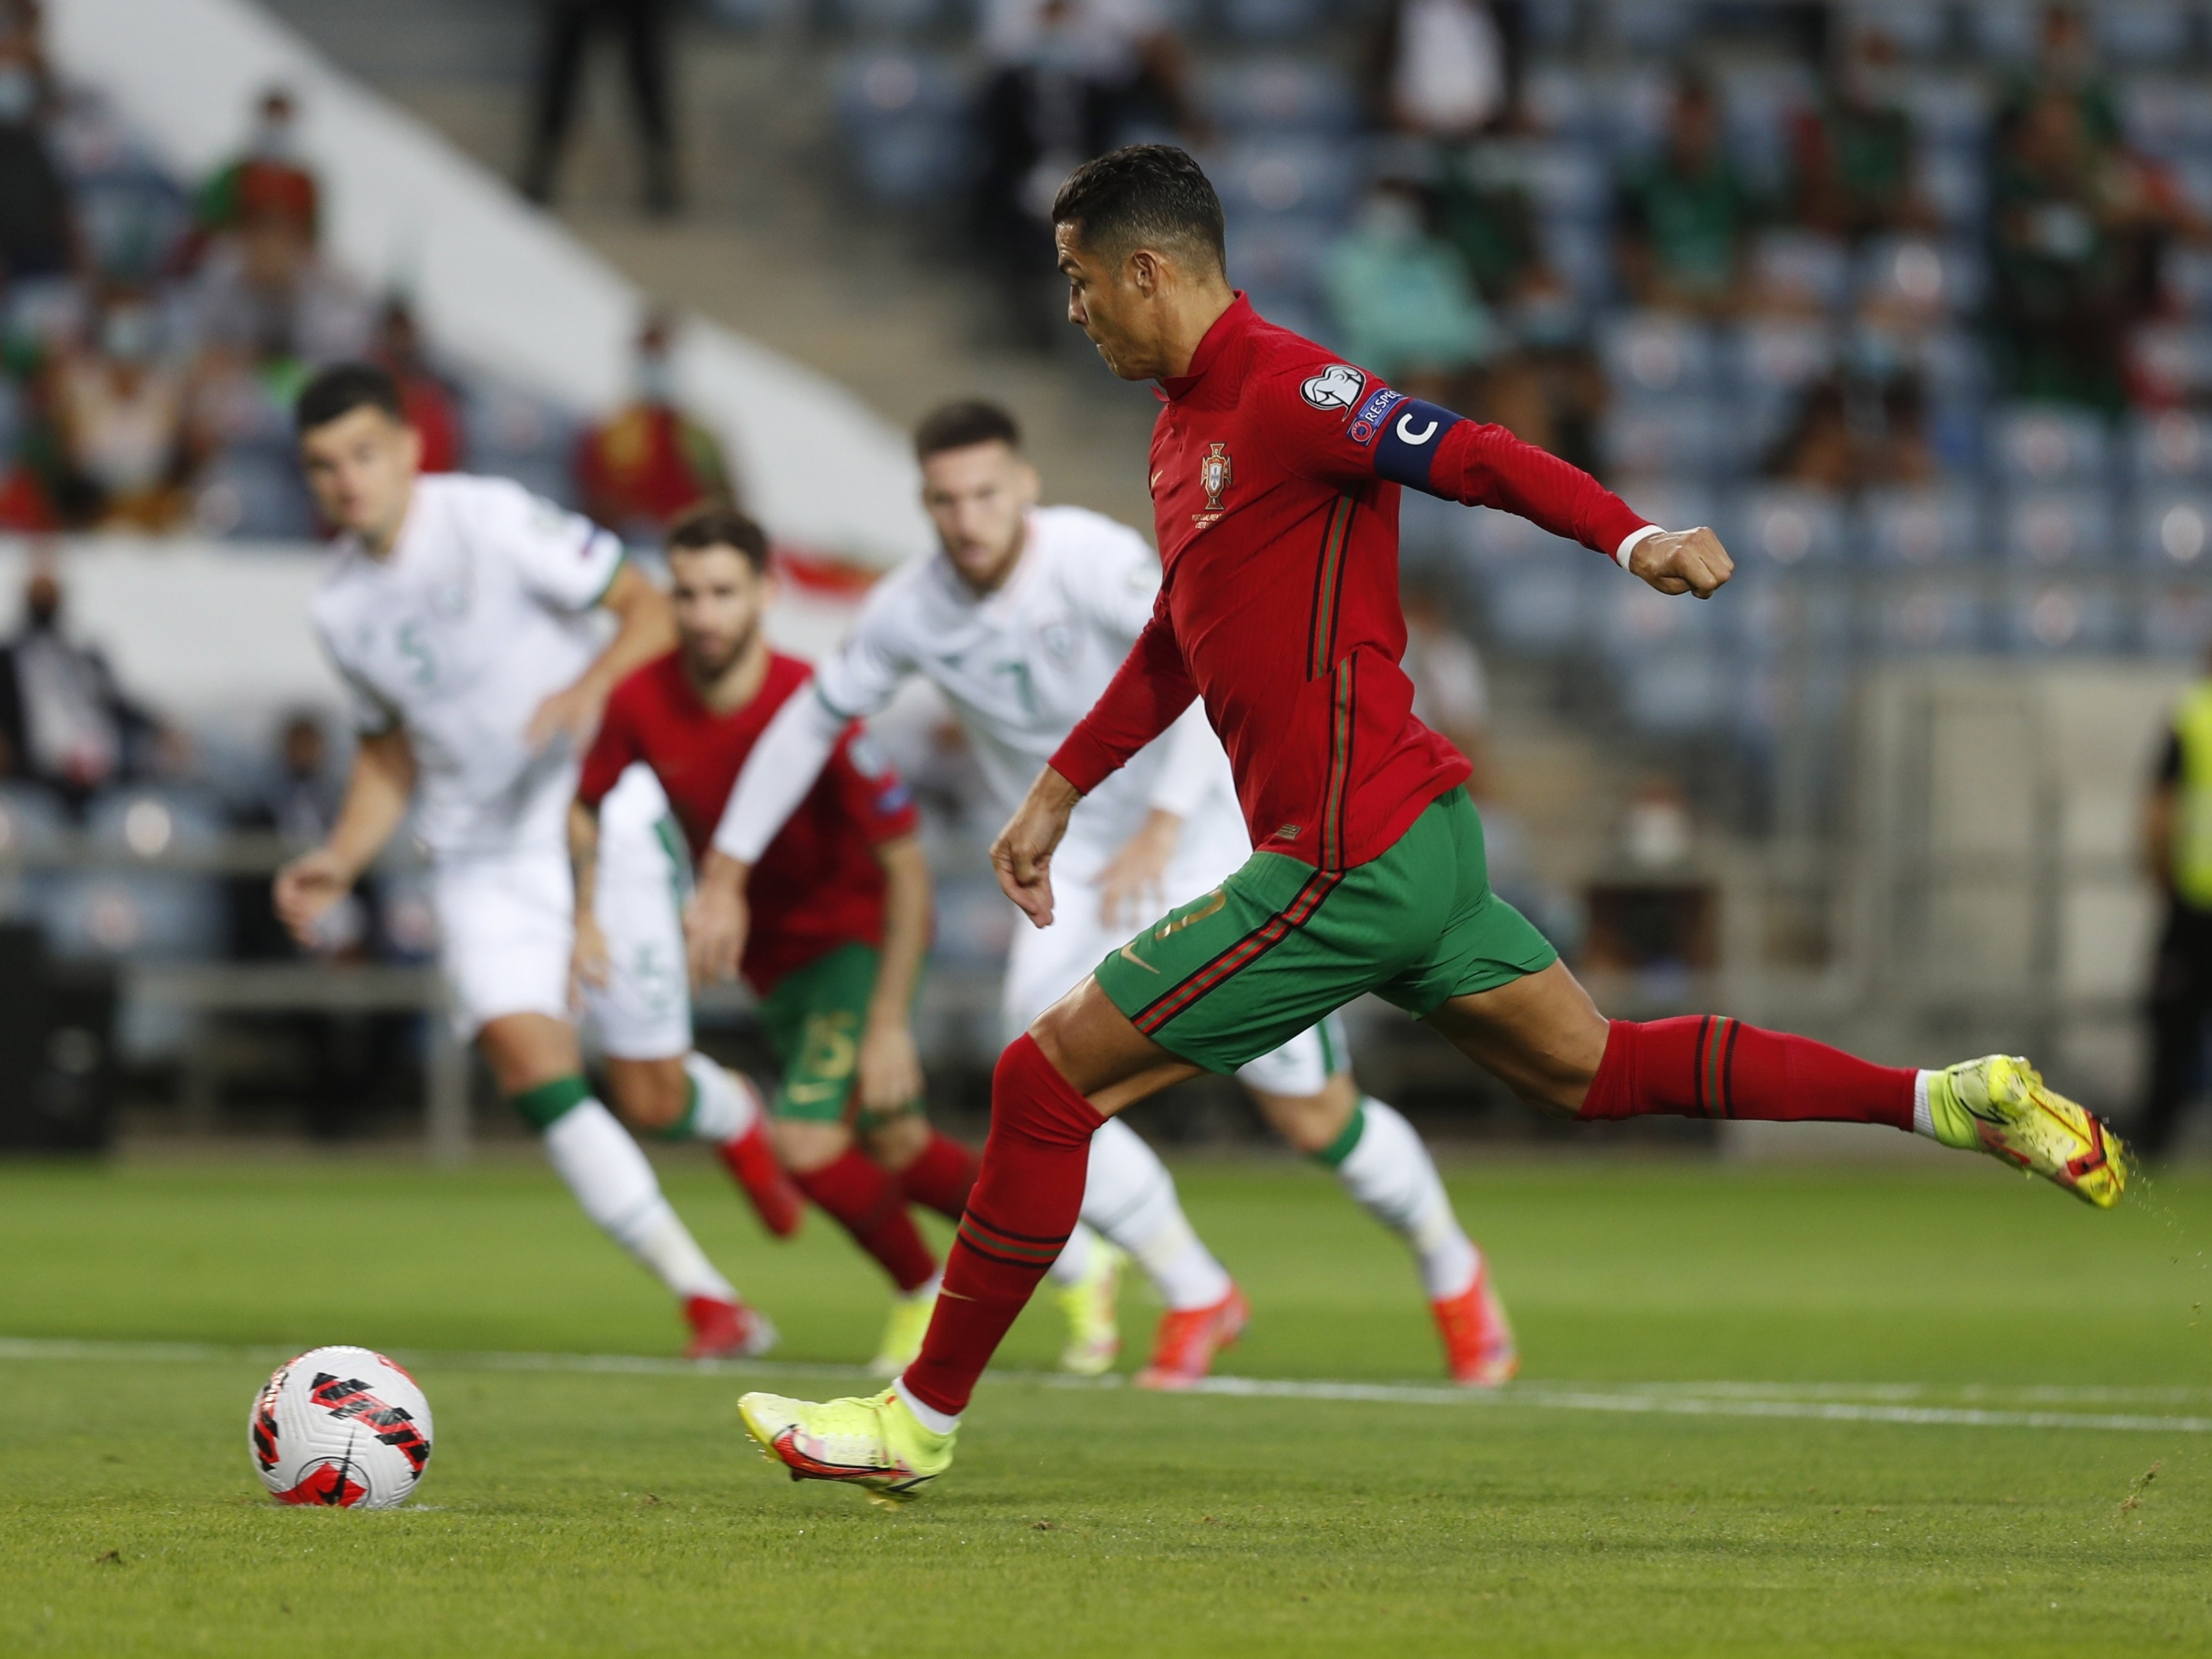 OFICIAL: Cristiano Ronaldo é barrado para jogo de Portugal nas